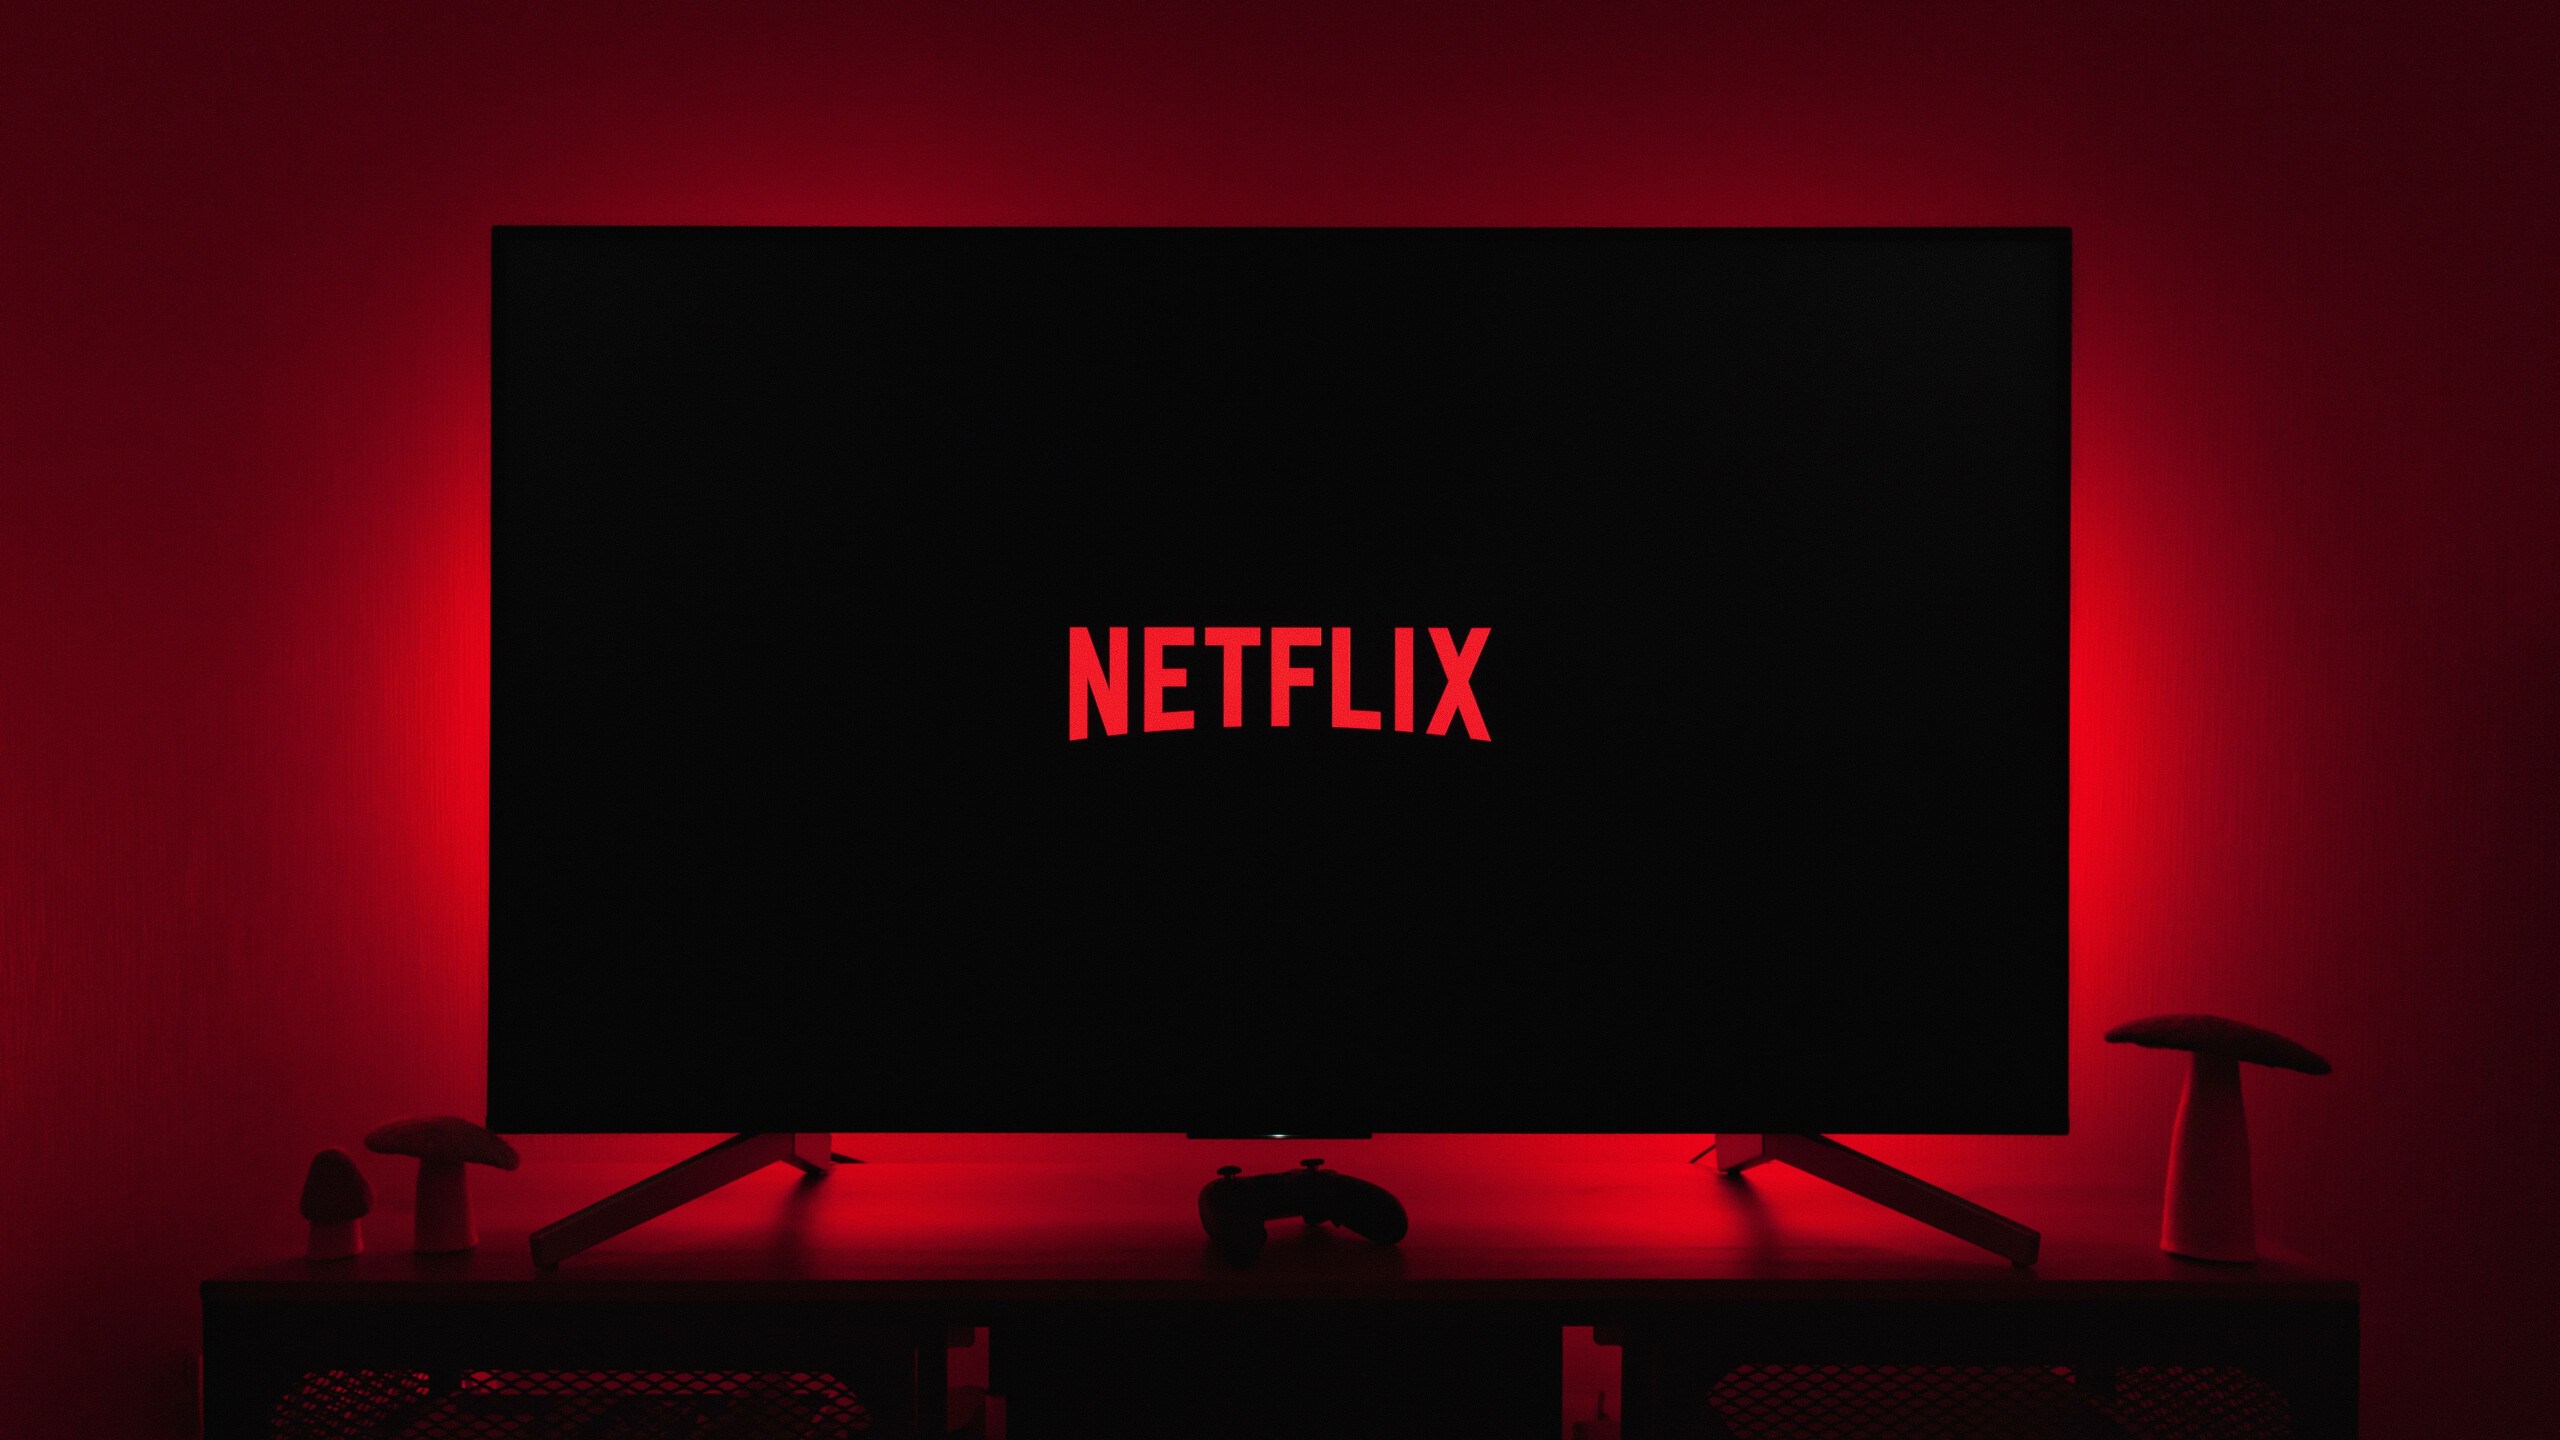 Netflix lança no Brasil o plano “Básico”, mas cheio de anúncios; vai economizar?